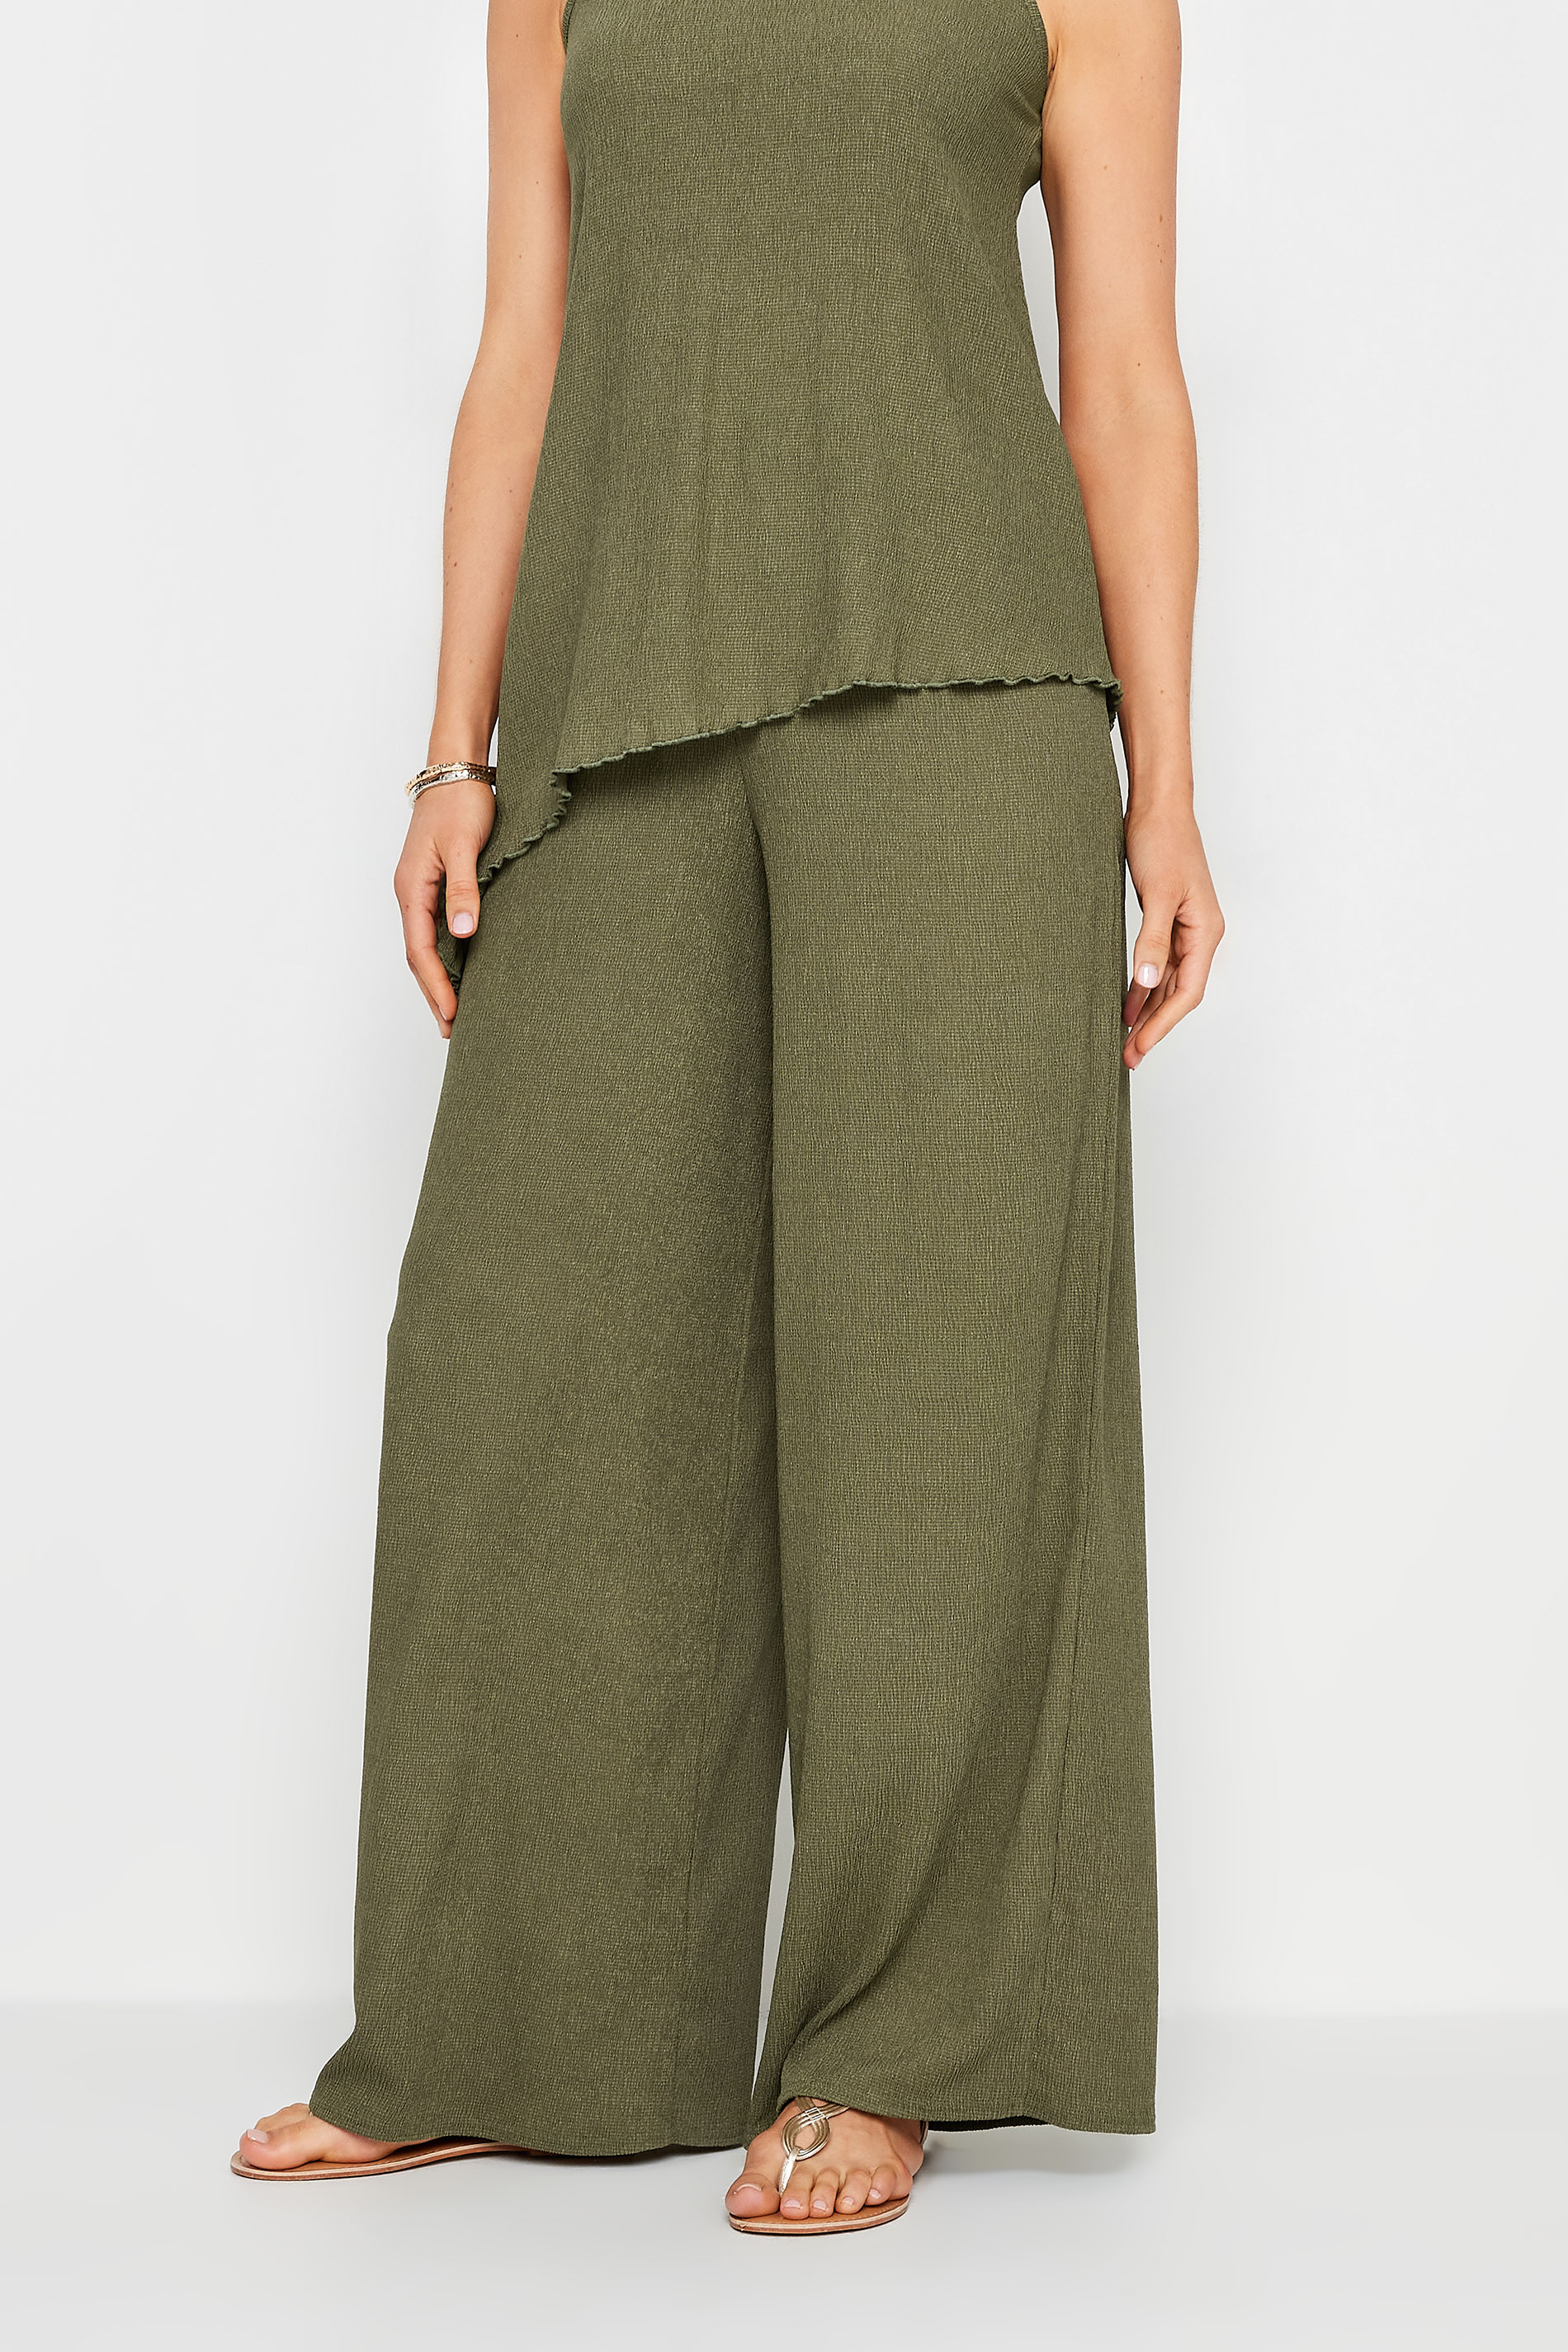 LTS Tall Women's Khaki Green Textured Wide Leg Trousers | Long Tall Sally  2